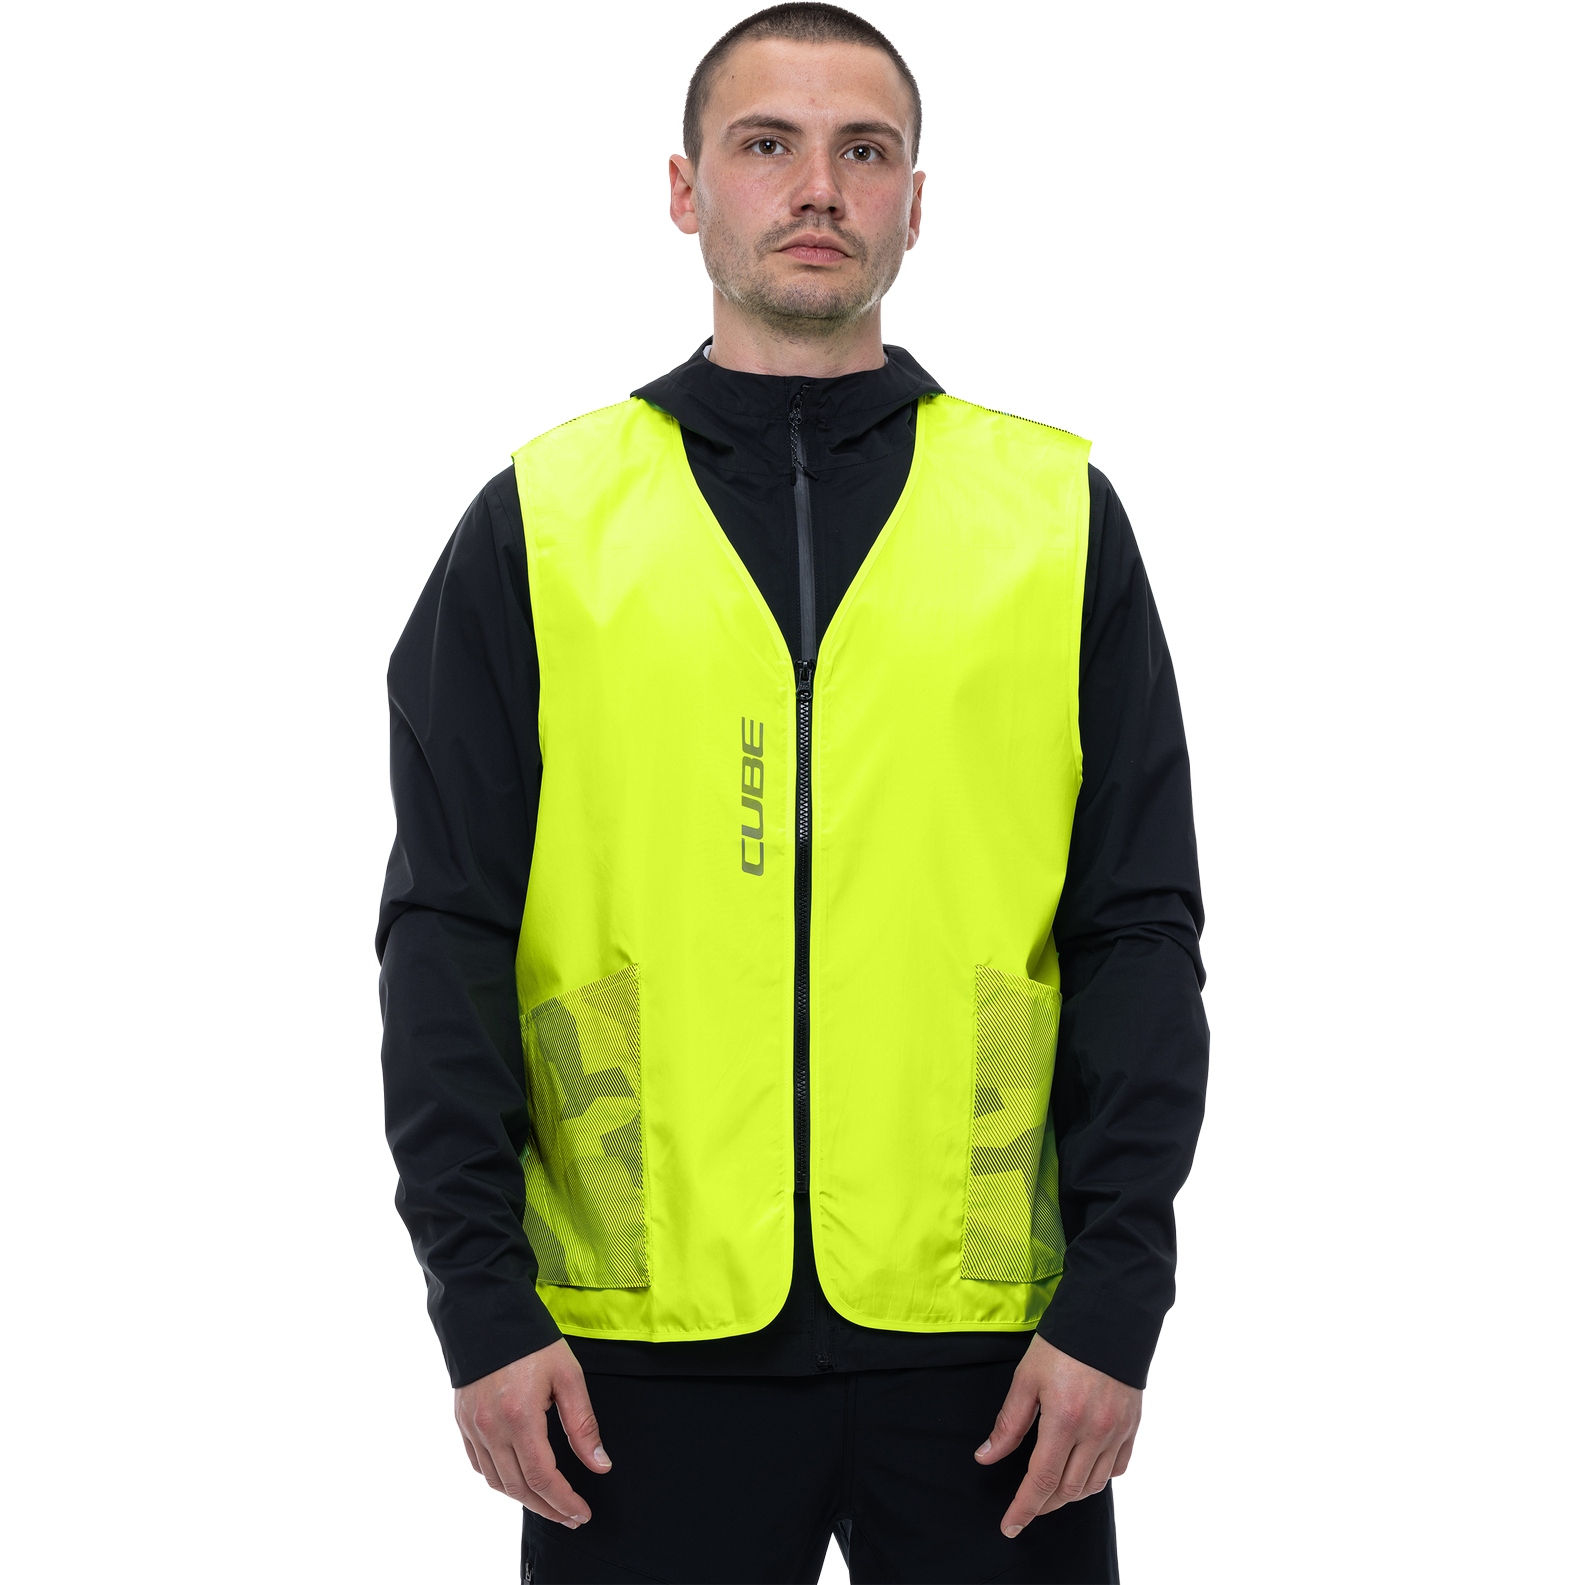 Produktbild von CUBE CMPT Safety Weste - neon yellow